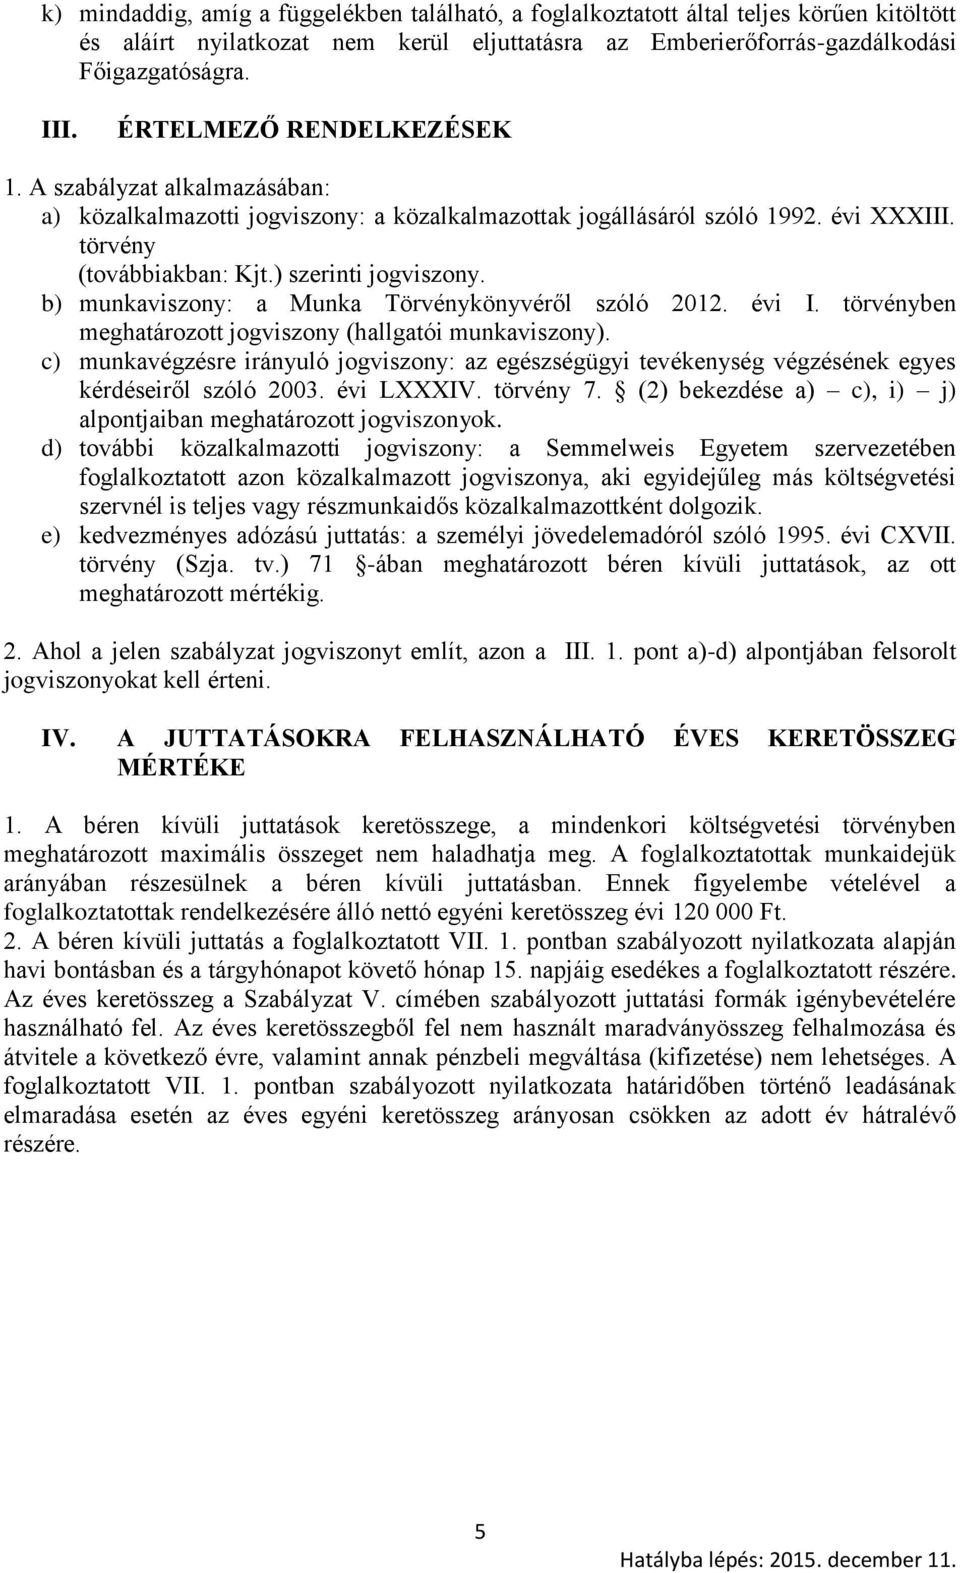 b) munkaviszony: a Munka Törvénykönyvéről szóló 2012. évi I. törvényben meghatározott jogviszony (hallgatói munkaviszony).